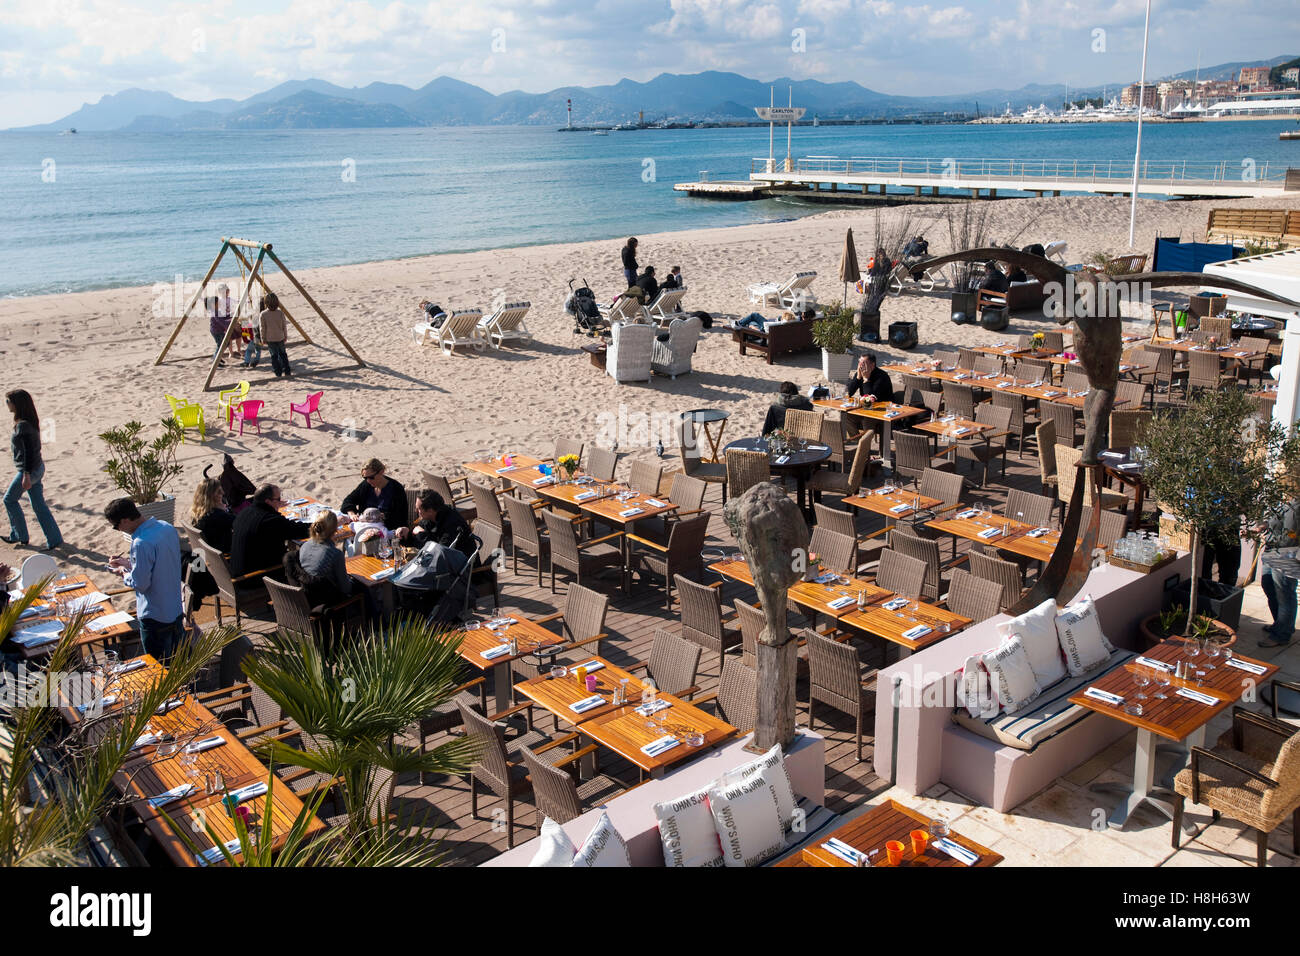 Frankreich, Cote d Azur, Cannes, Boulevard de la Croisette, elegante Strandrestaurants an der Flanierpromenade Banque D'Images